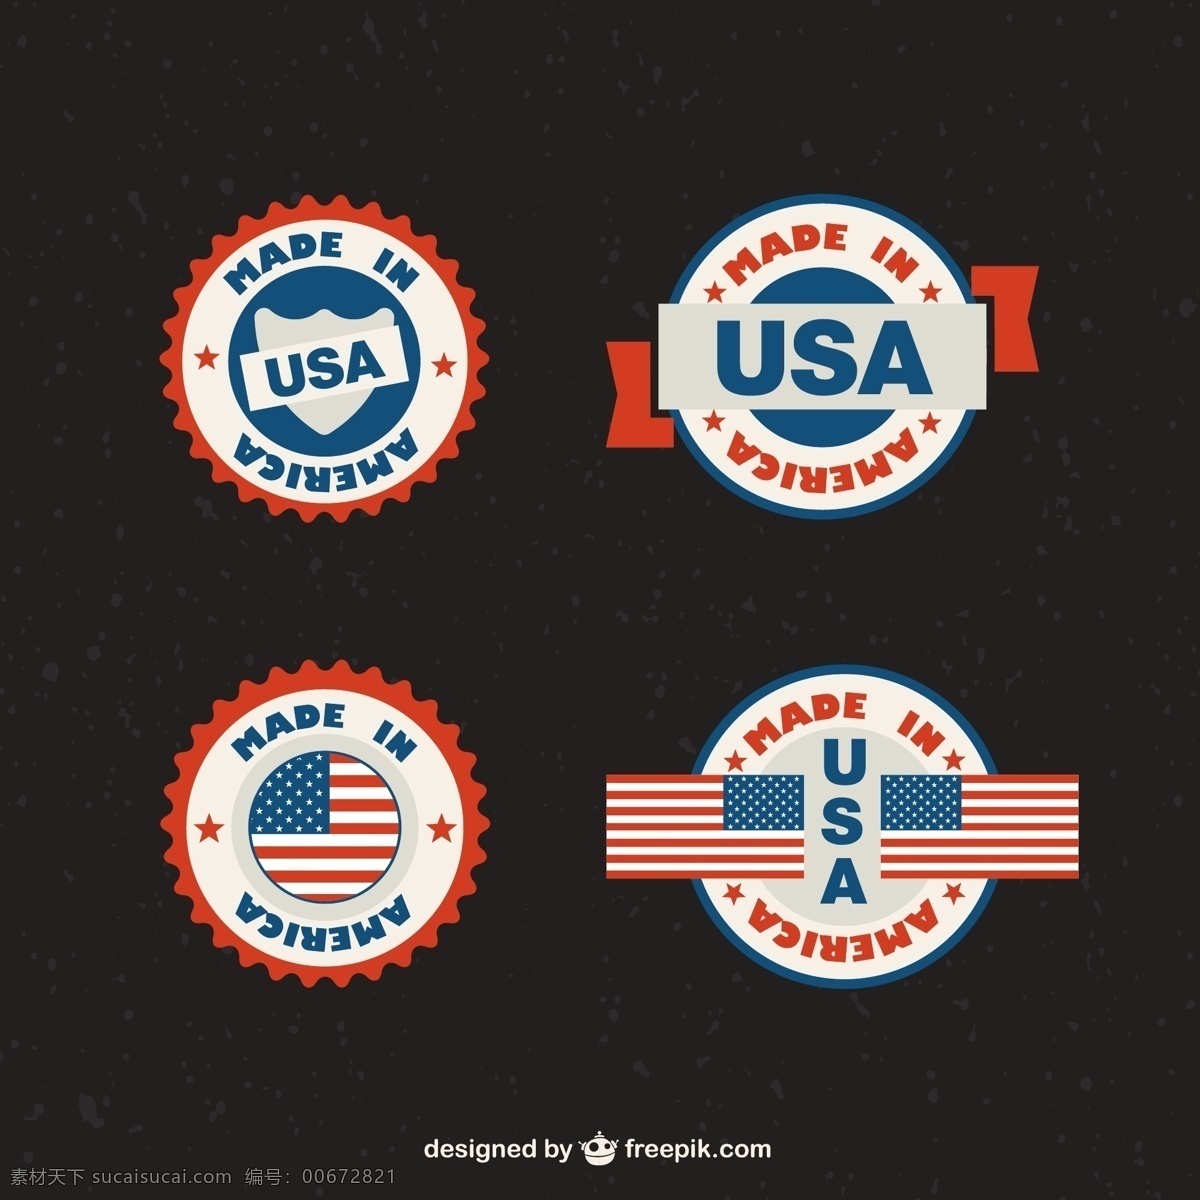 美国标签 美国 美国元素 卫兵 邮票设计 美国邮票 米 美国国旗 美国标志 美国元素下载 国旗 大巴 钟楼 摩托车 独立日 美国独立日 矢量图片 矢量素材 其他矢量 矢量